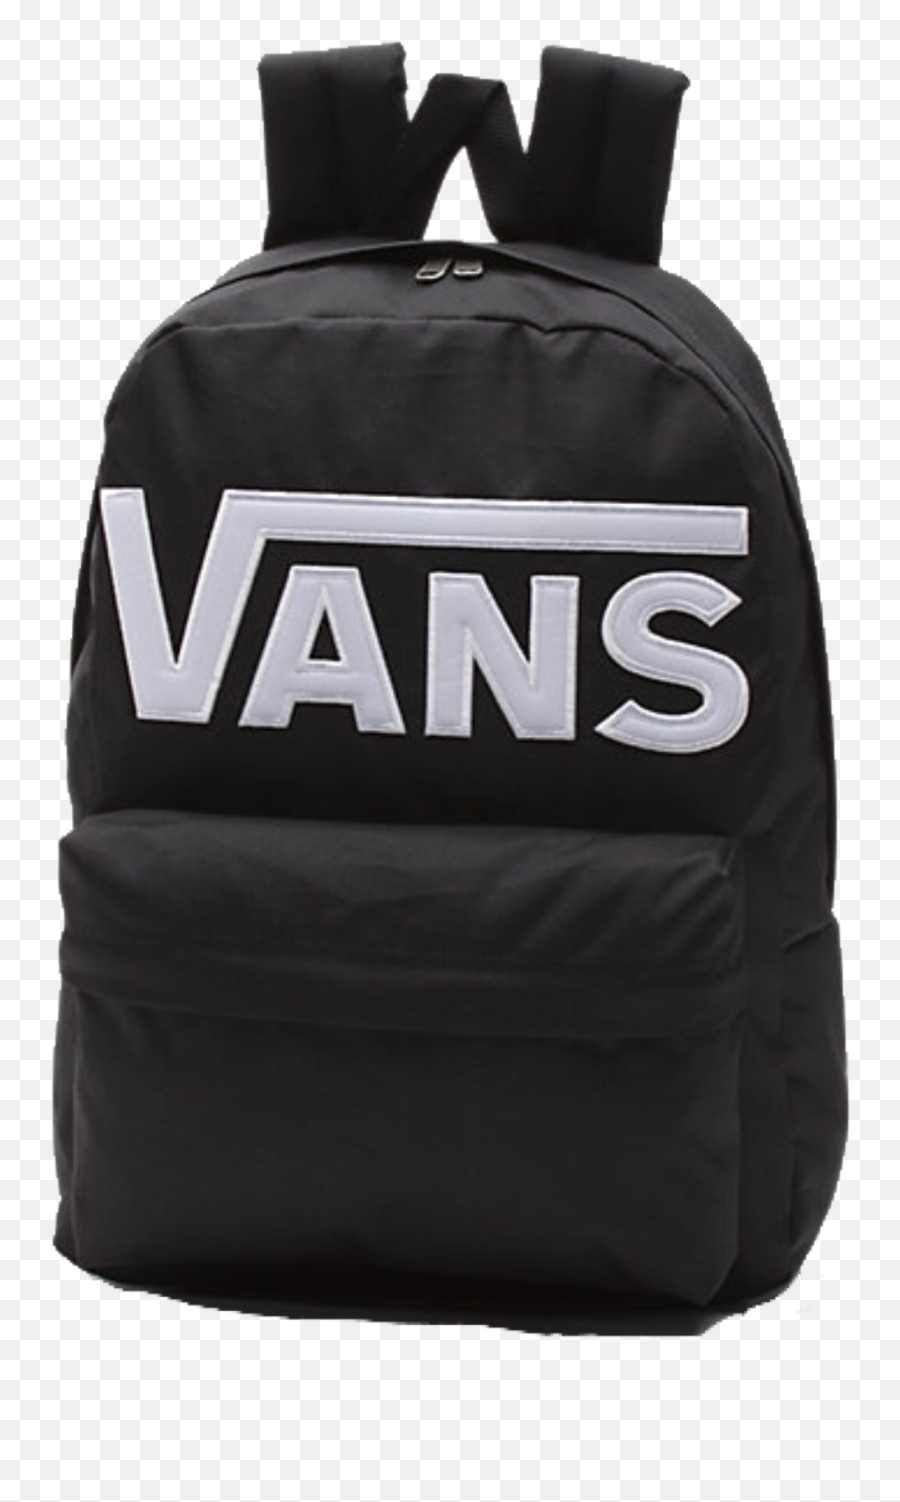 Vans Backpack Popular Trendy Black - Vans Old Skool Backpack Black Emoji,Black Emoji Backpack